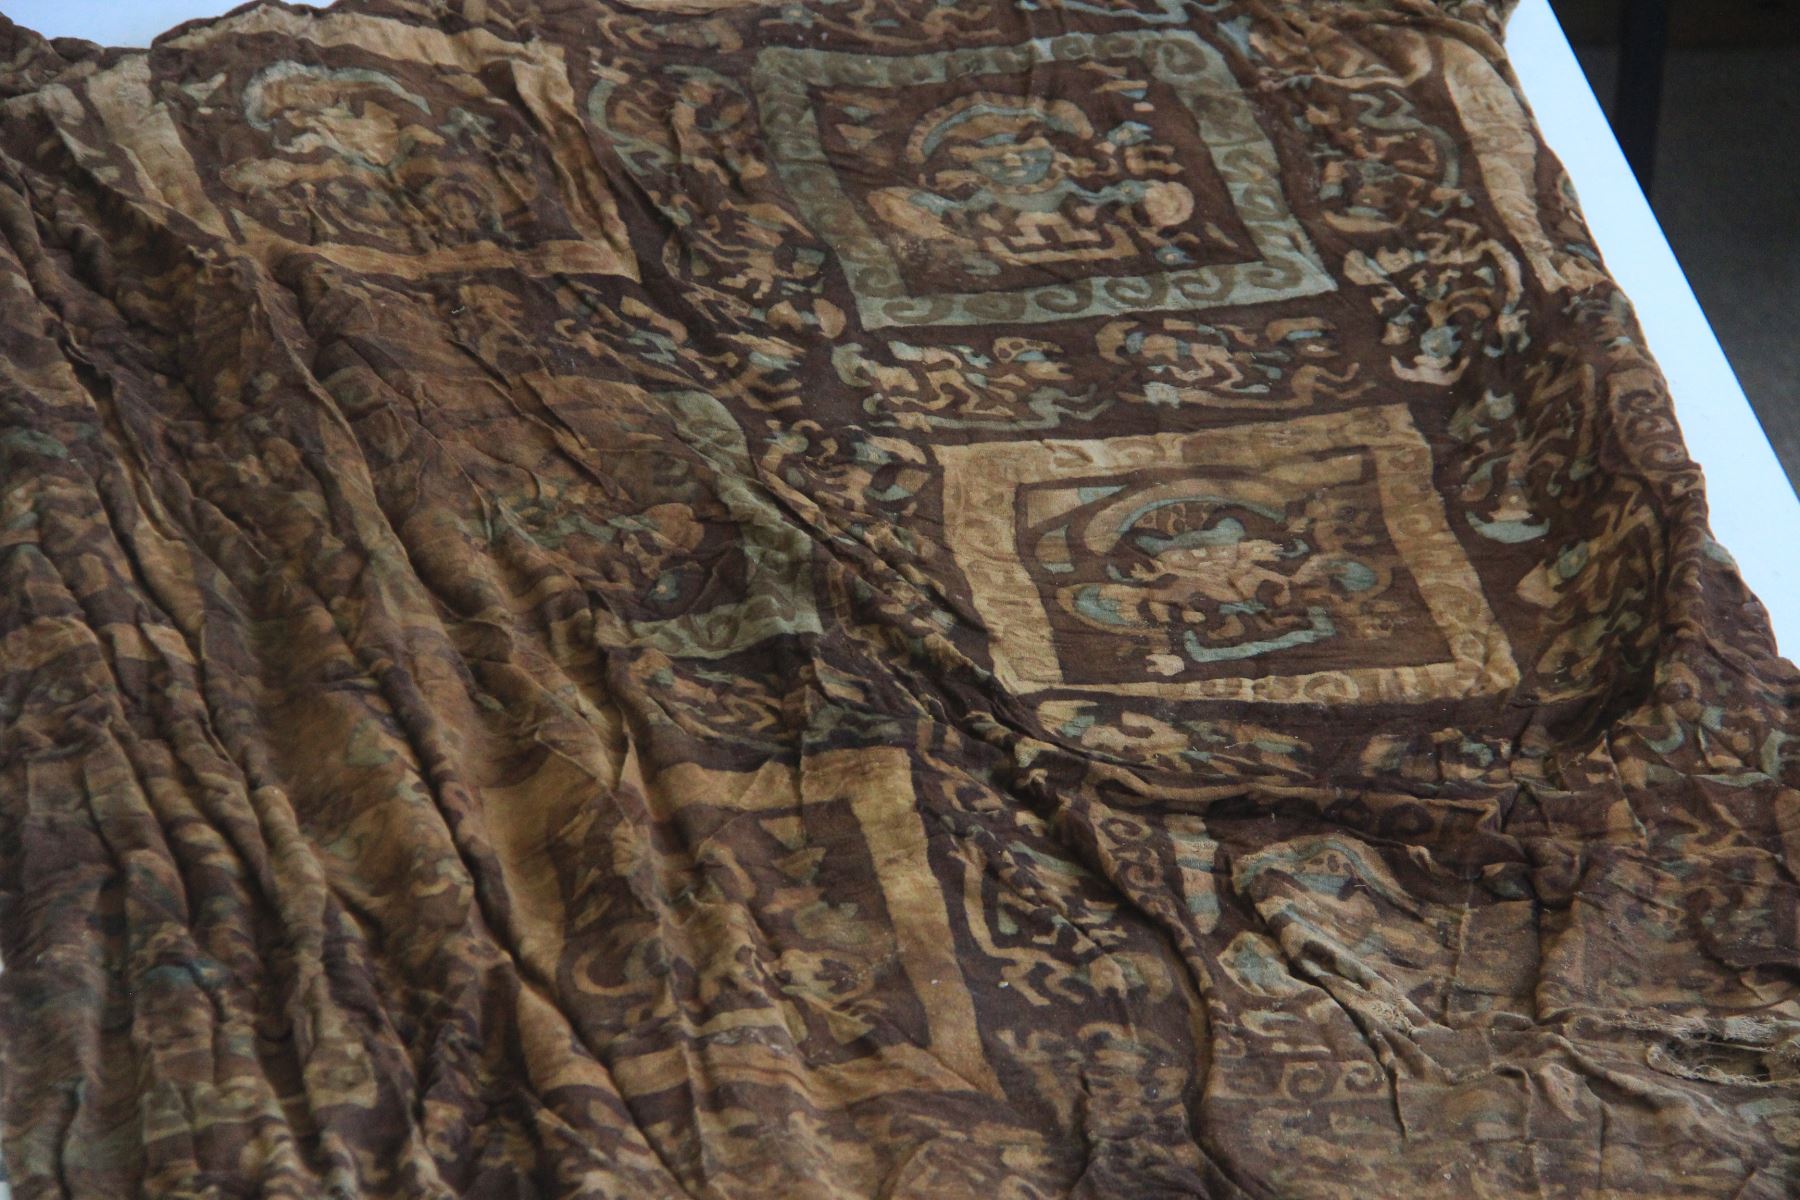 El hallazgo arqueológico de textiles que contienen imágenes de divinidades de la civilización Chimú, que cubrían a los menores que fueron sacrificados colectivamente hace 550 años, constituye un hecho inédito en el Perú, sostuvo el arqueólogo Gabriel Prieto, quien lidera el equipo encargado de esta investigación. ANDINA